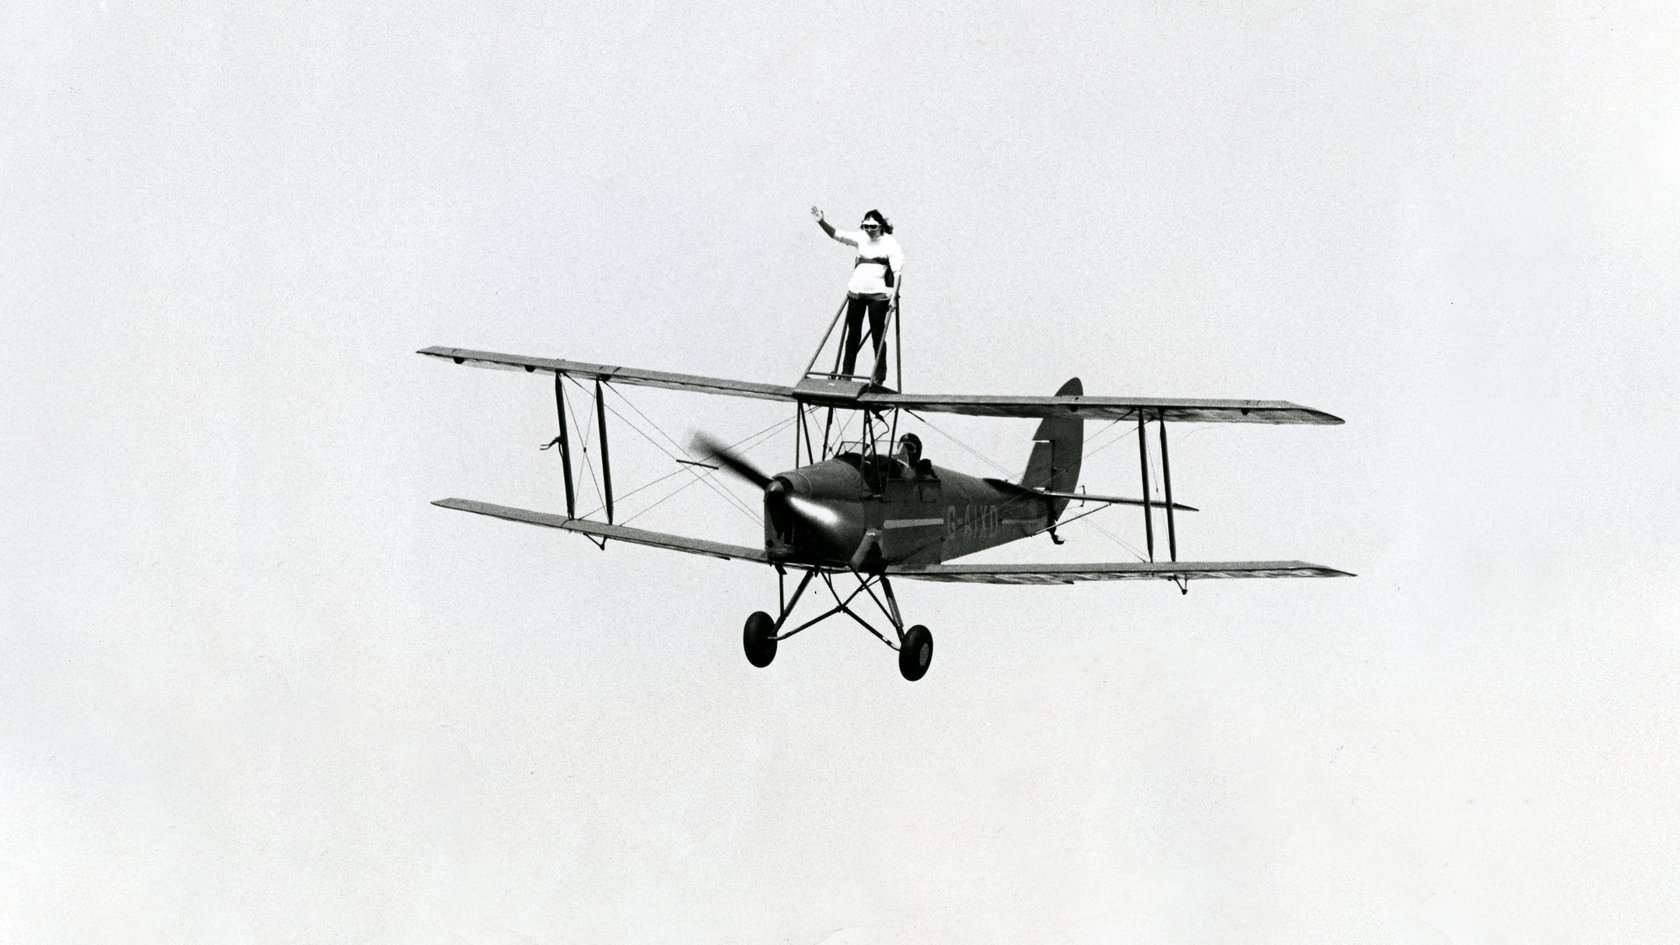 Photo Archiv Schweizer: Schwarz-Weiß-Foto mit altem Doppeldecker-Flugzeug mit stehender Frau auf dem oberen Flügel